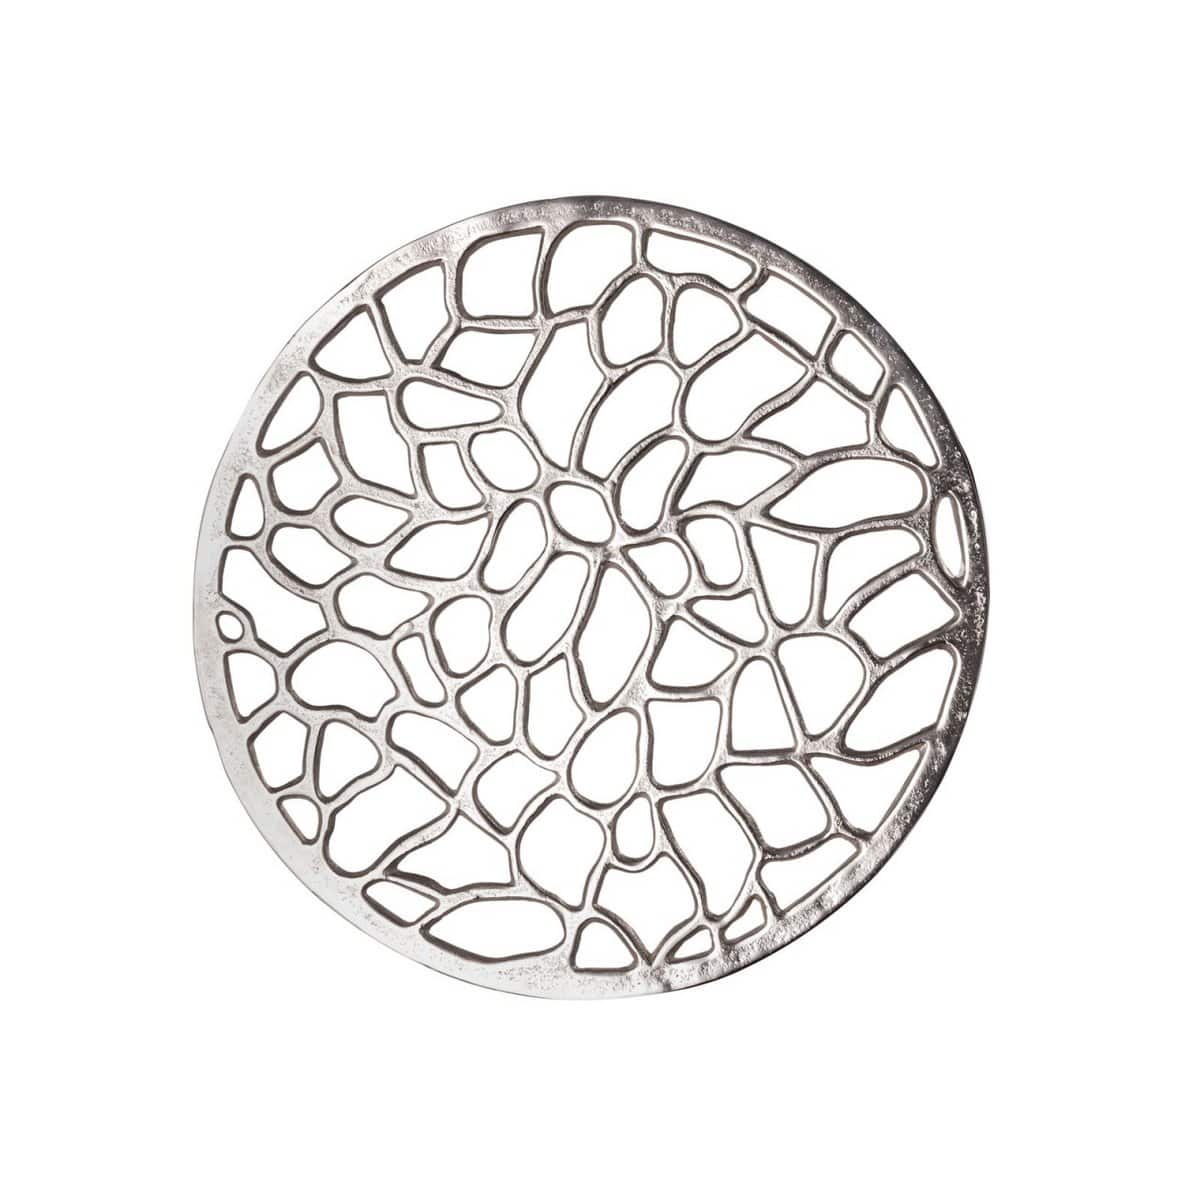 Voglrieder kreatives Wohnen Bijzettafel metalen siertafel ø 40 x 45 cm rond Agadir zilver of goud aluminium koraal design